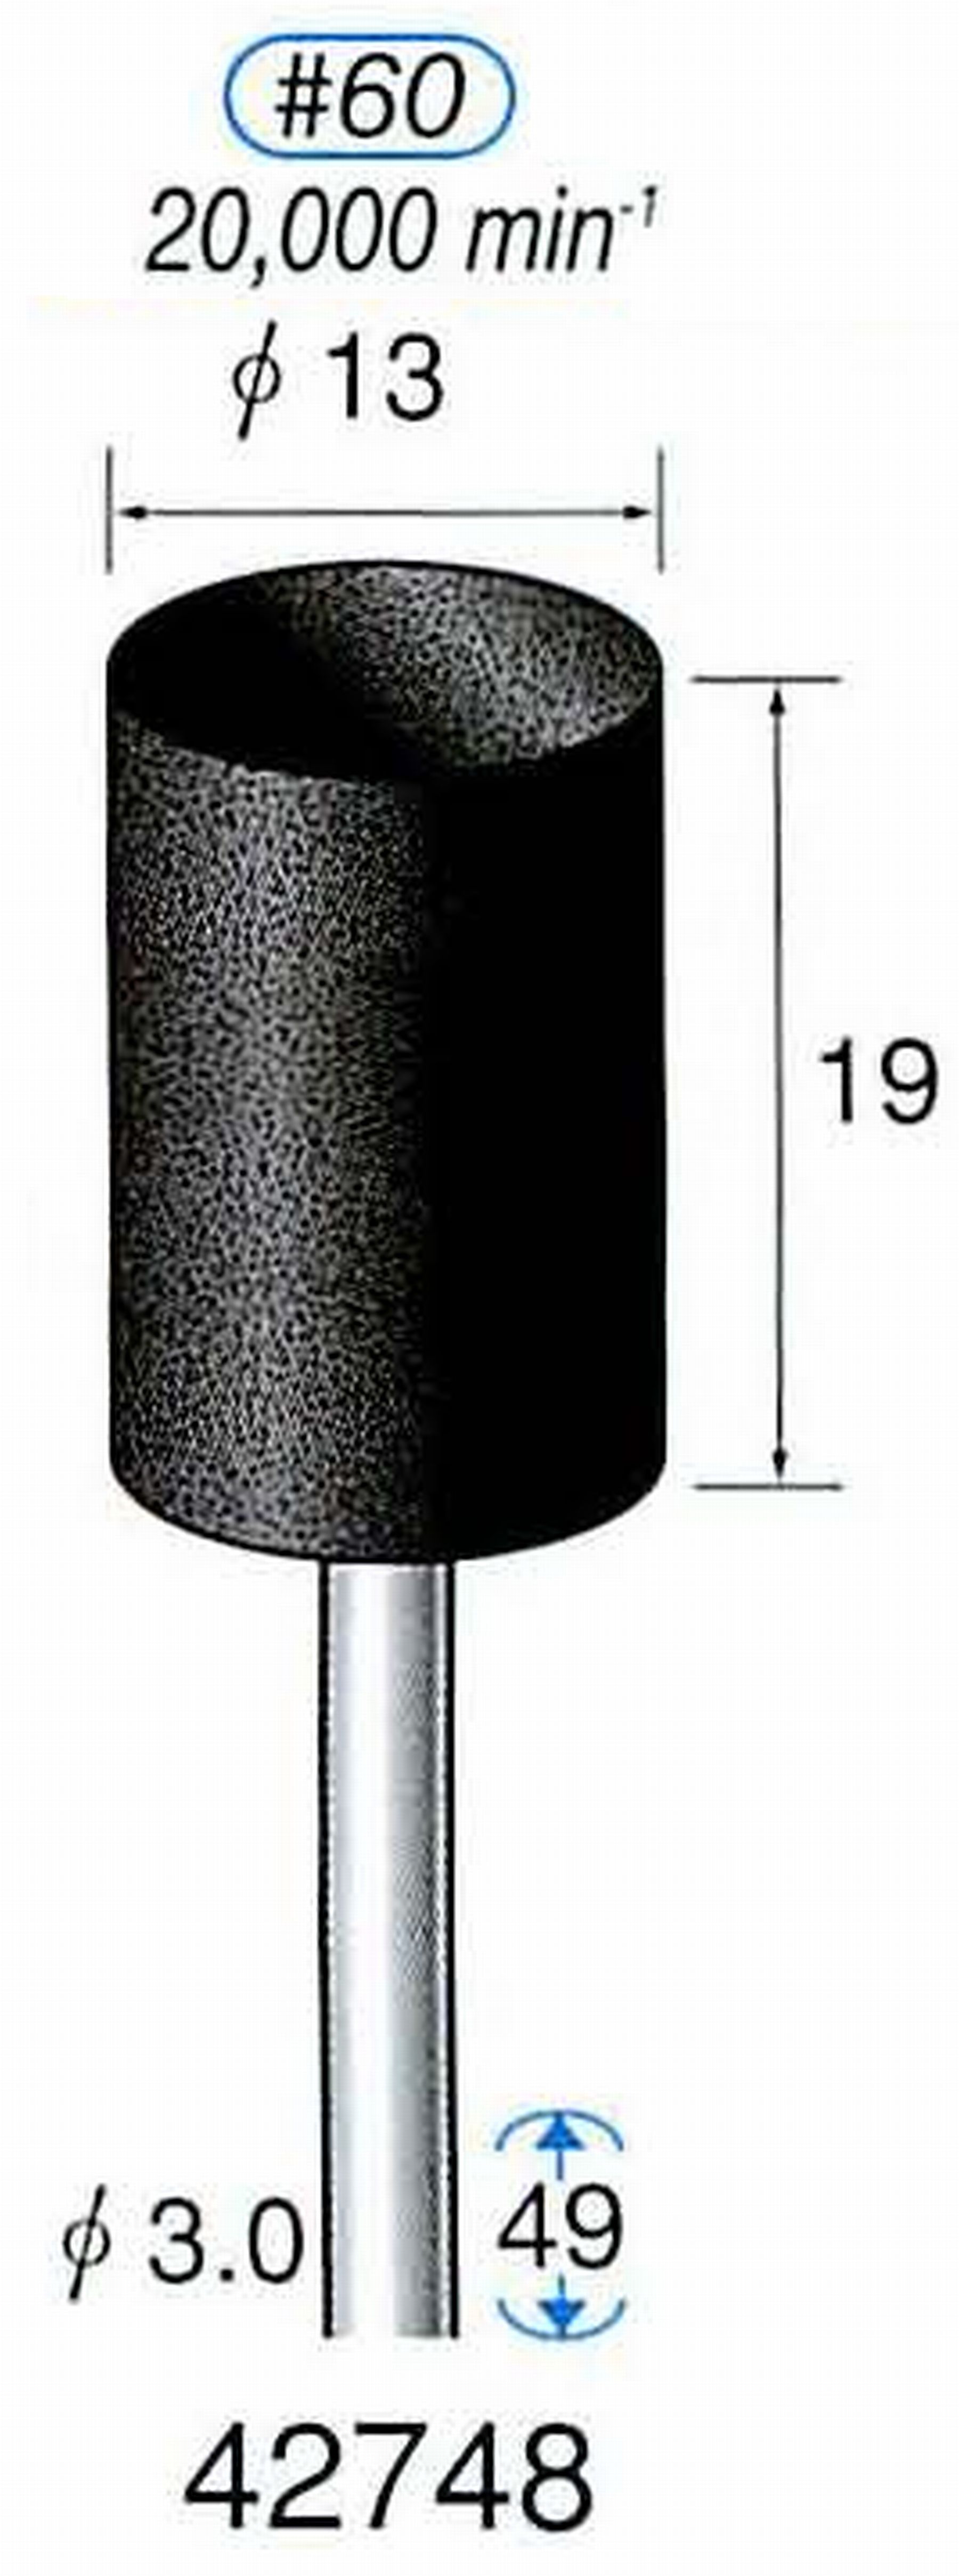 ナカニシ/NAKANISHI 軸付砥石(A砥粒) ブラック砥石 軸径(シャンク) φ3.0mm 42748